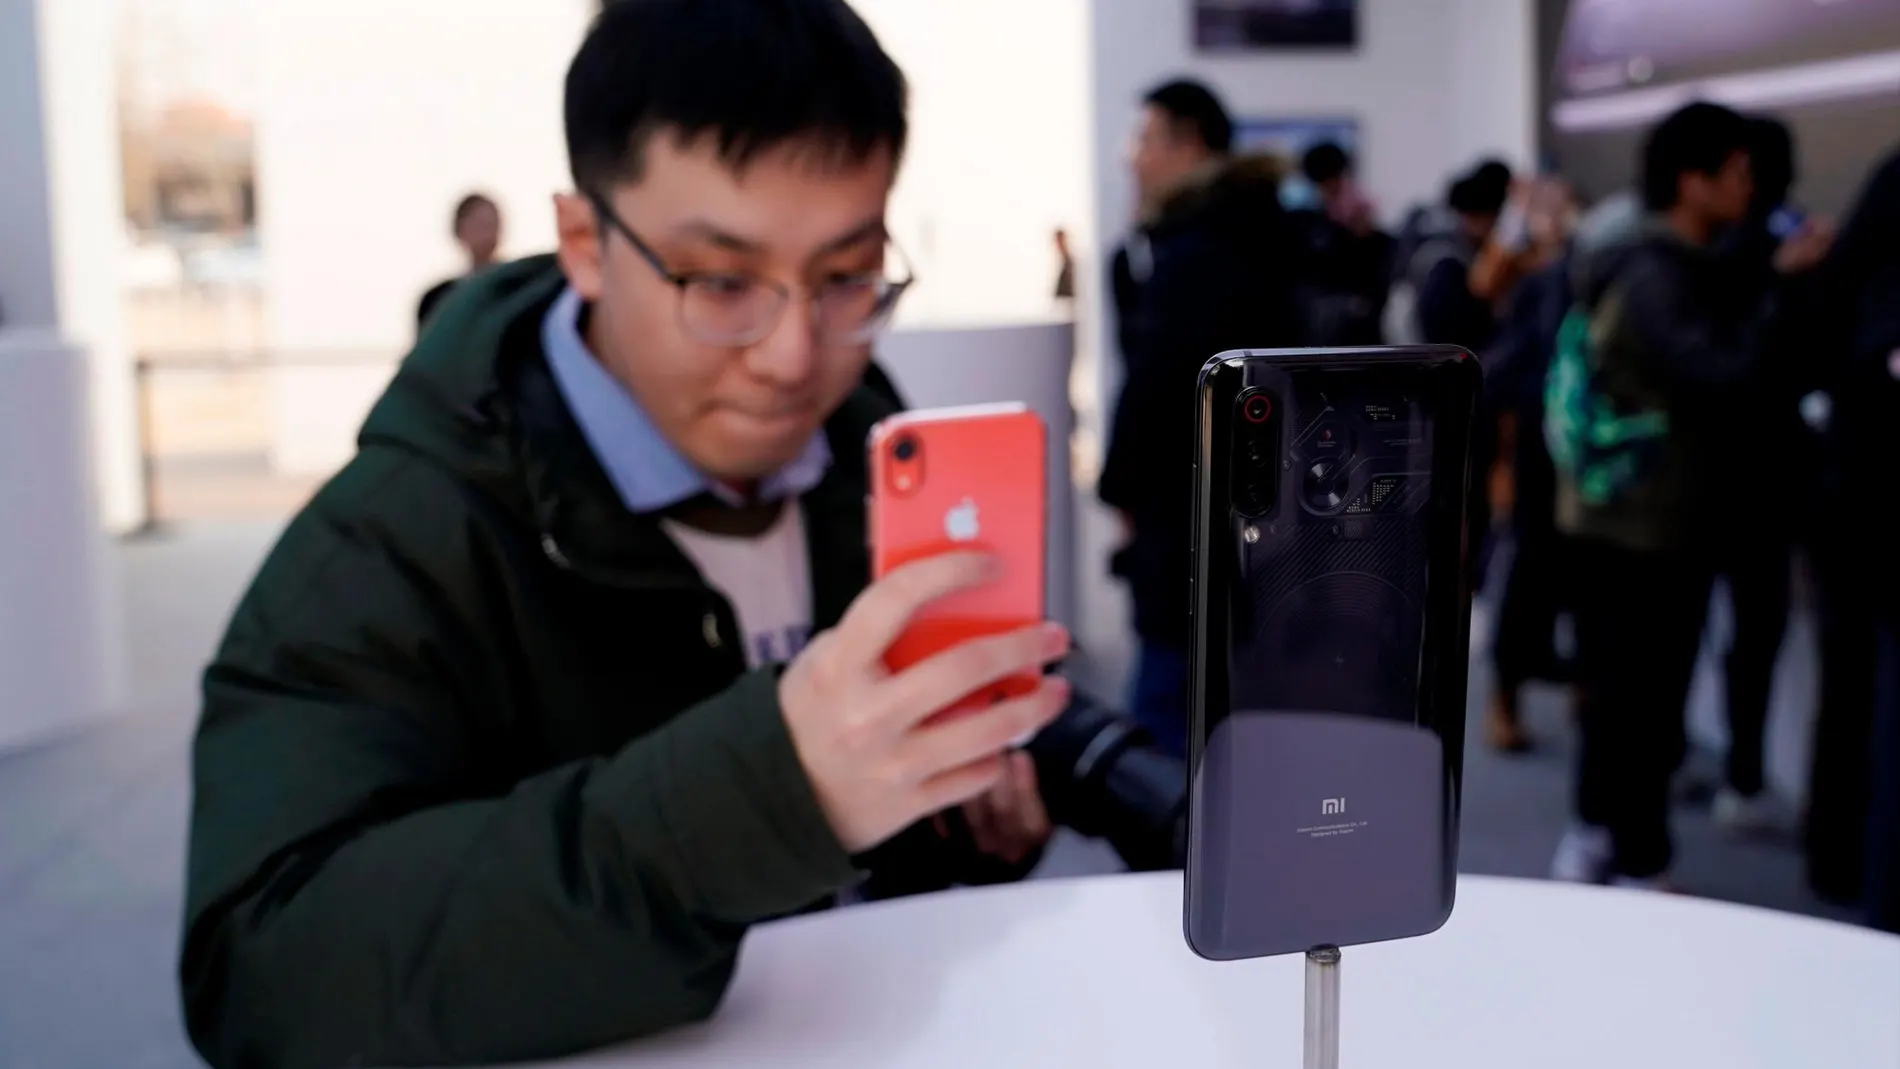 Un visitante toma fotos del nuevo Xiaomi Mi 9, durante su presentación este miércoles en Pekín (China) / Efe